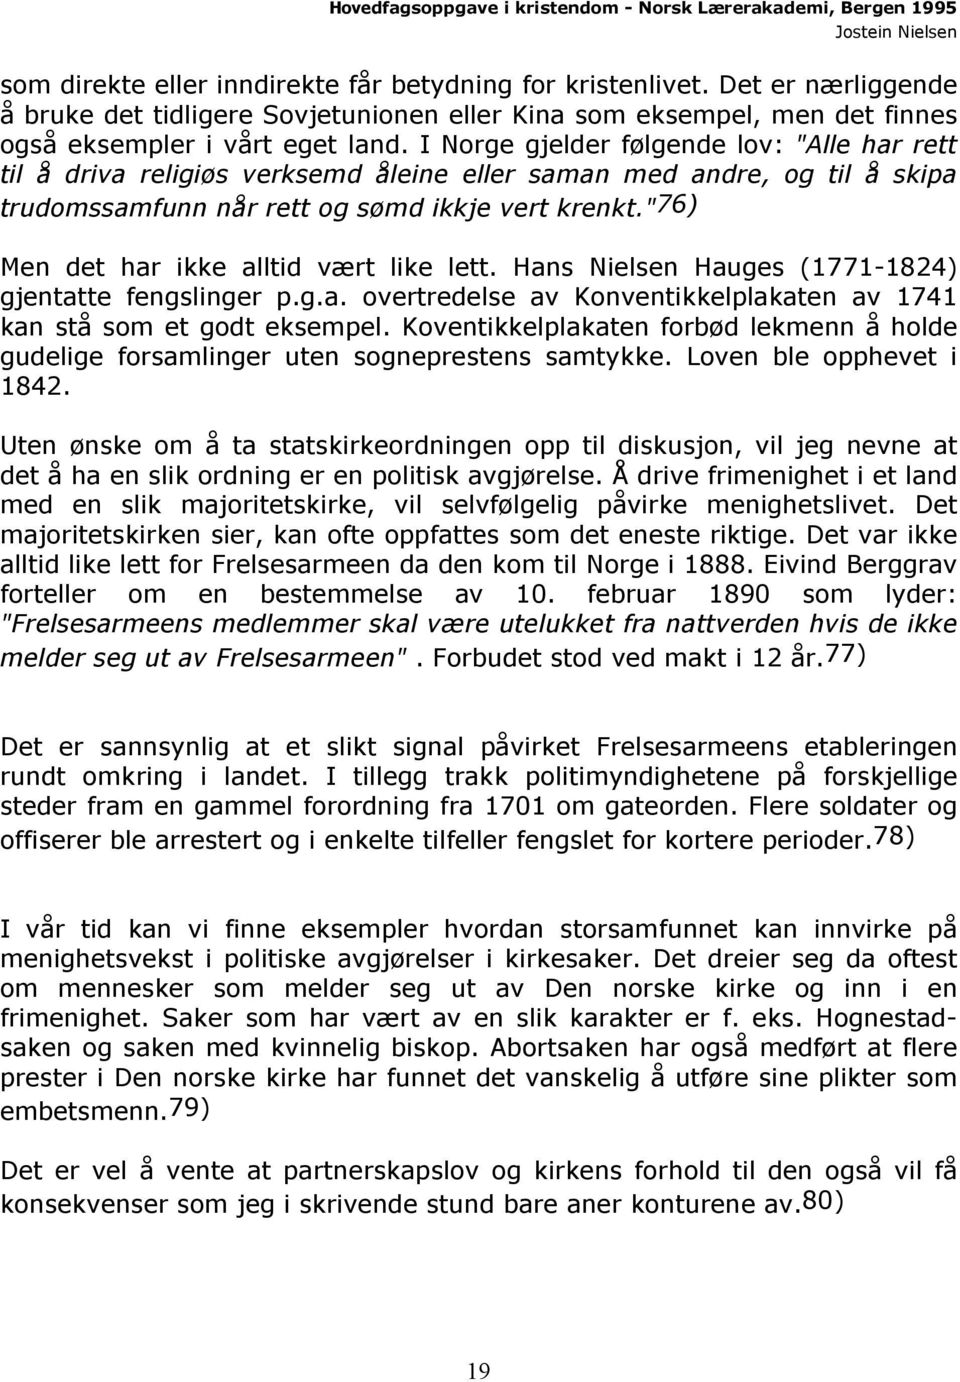 "76) Men det har ikke alltid vært like lett. Hans Nielsen Hauges (1771-1824) gjentatte fengslinger p.g.a. overtredelse av Konventikkelplakaten av 1741 kan stå som et godt eksempel.